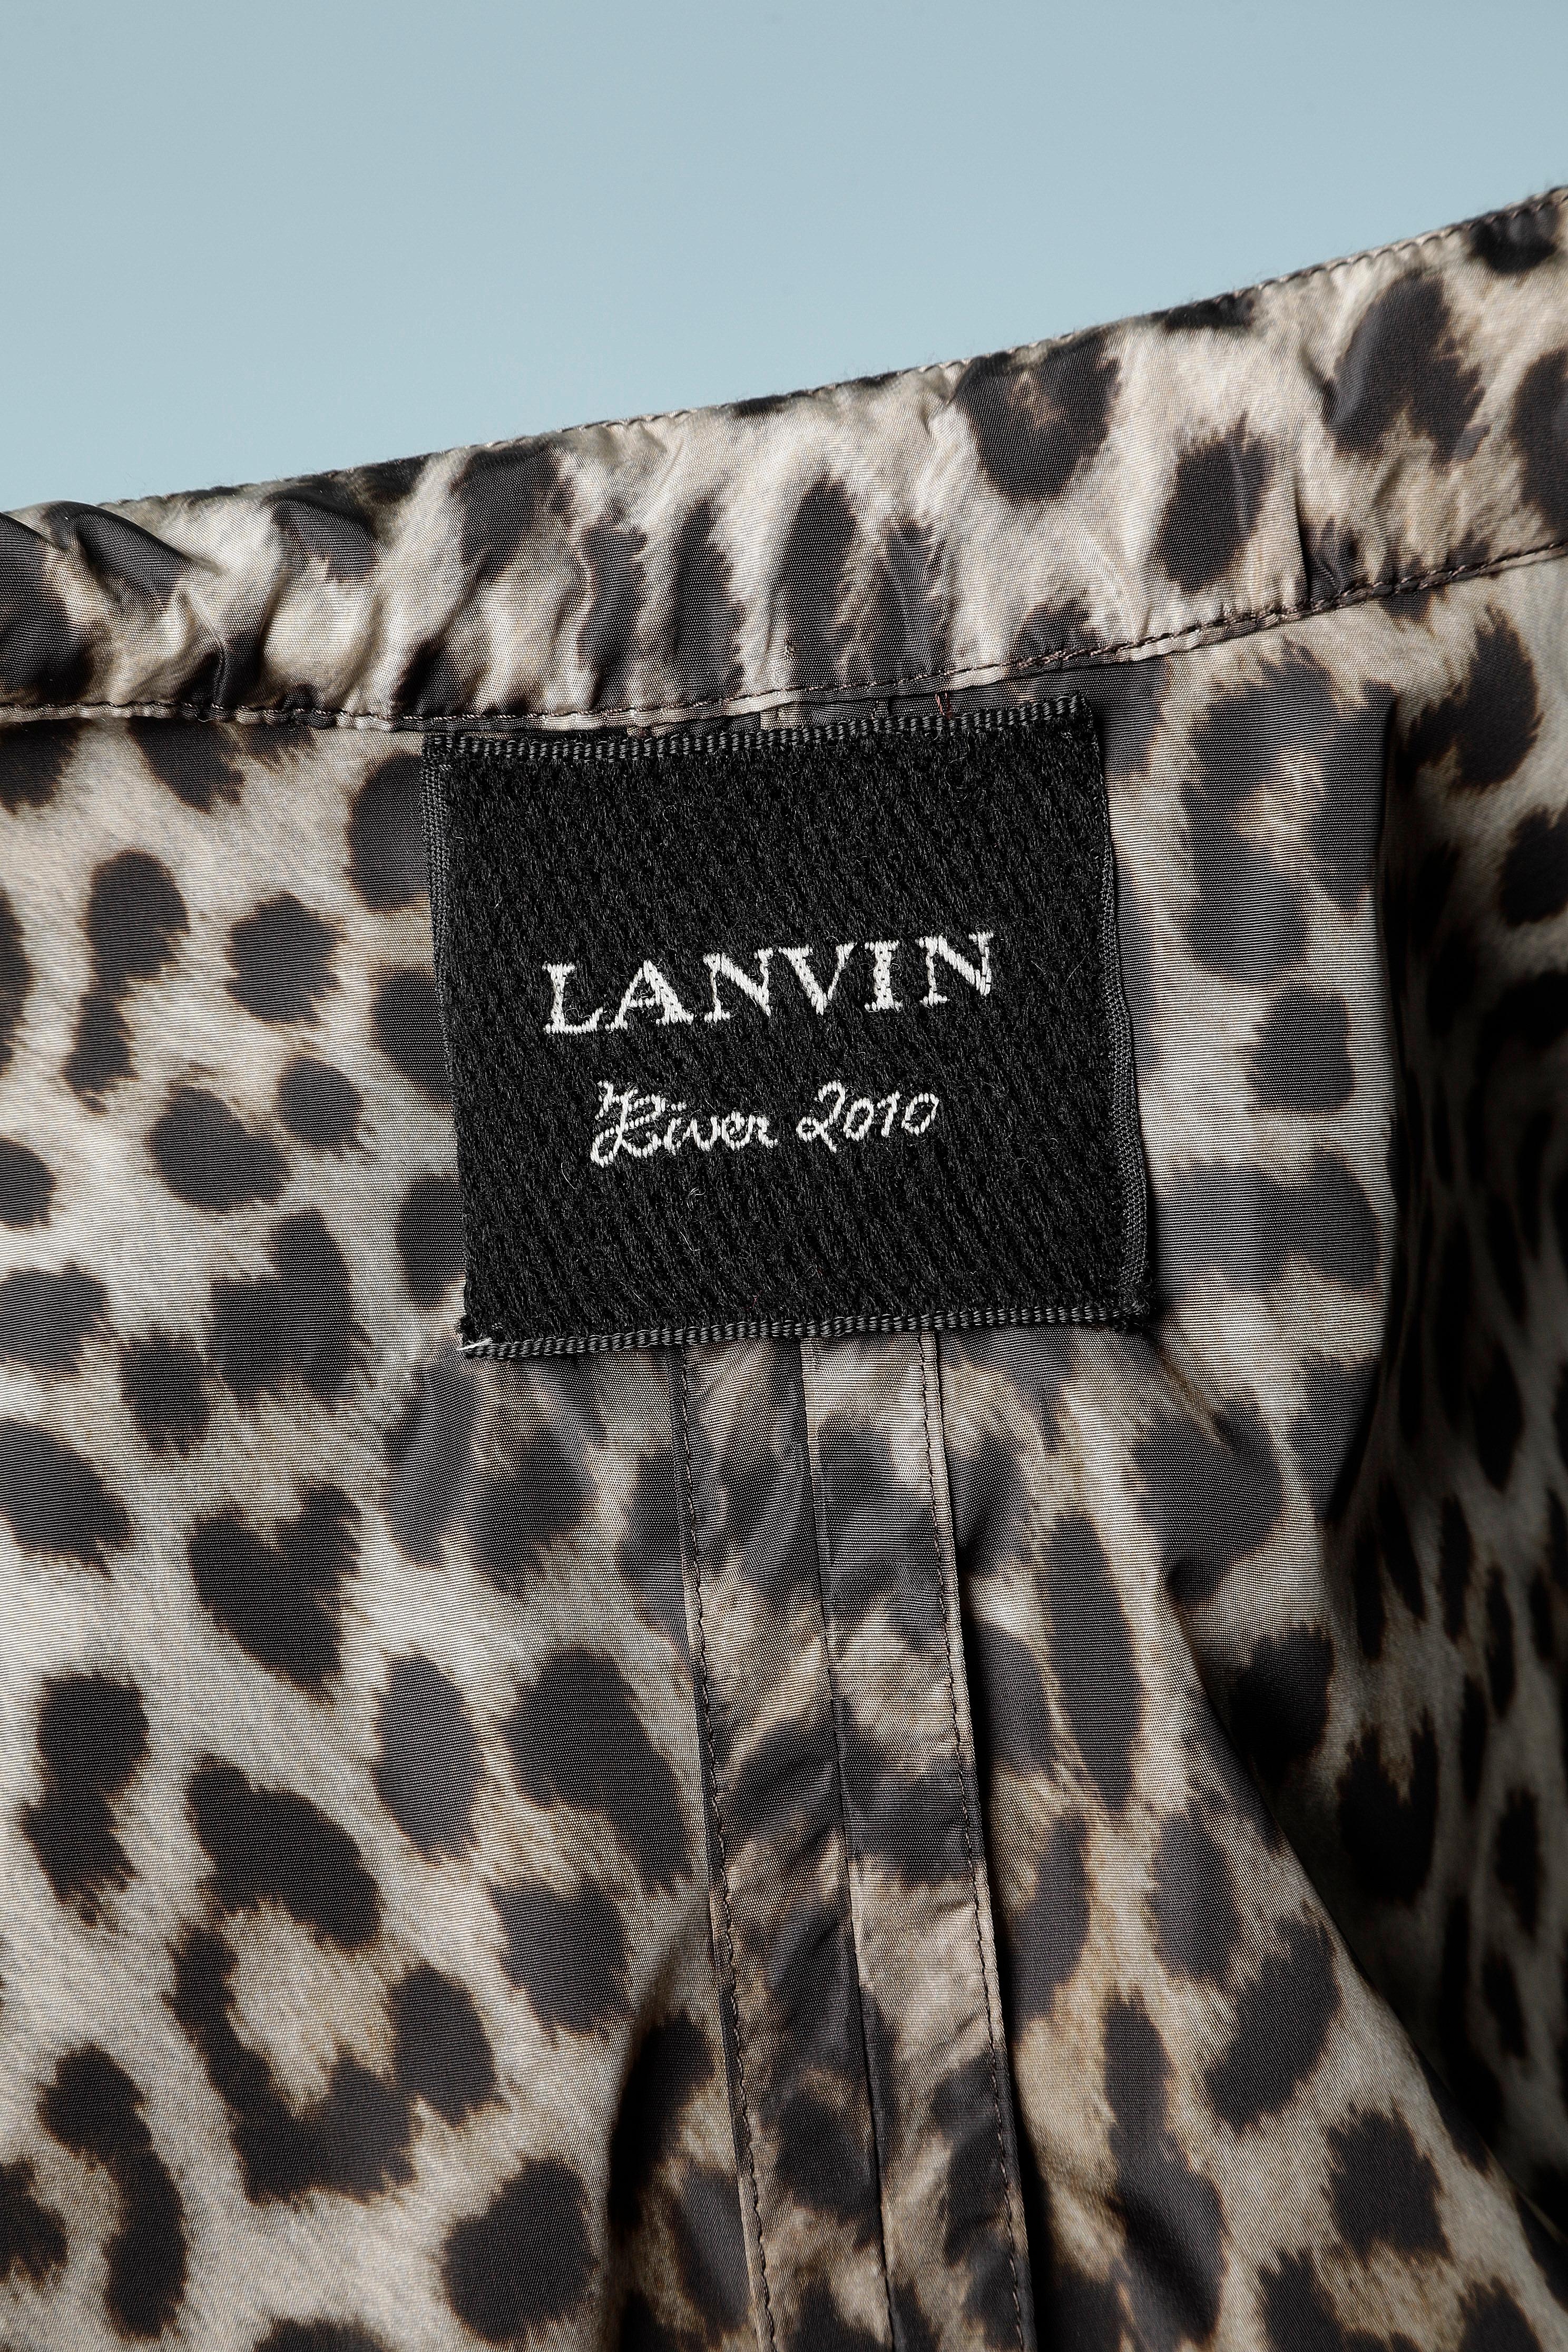  Trench-coat croisé en nylon imprimé léopard Lanvin by Alber Elbaz 2010 Pour femmes 